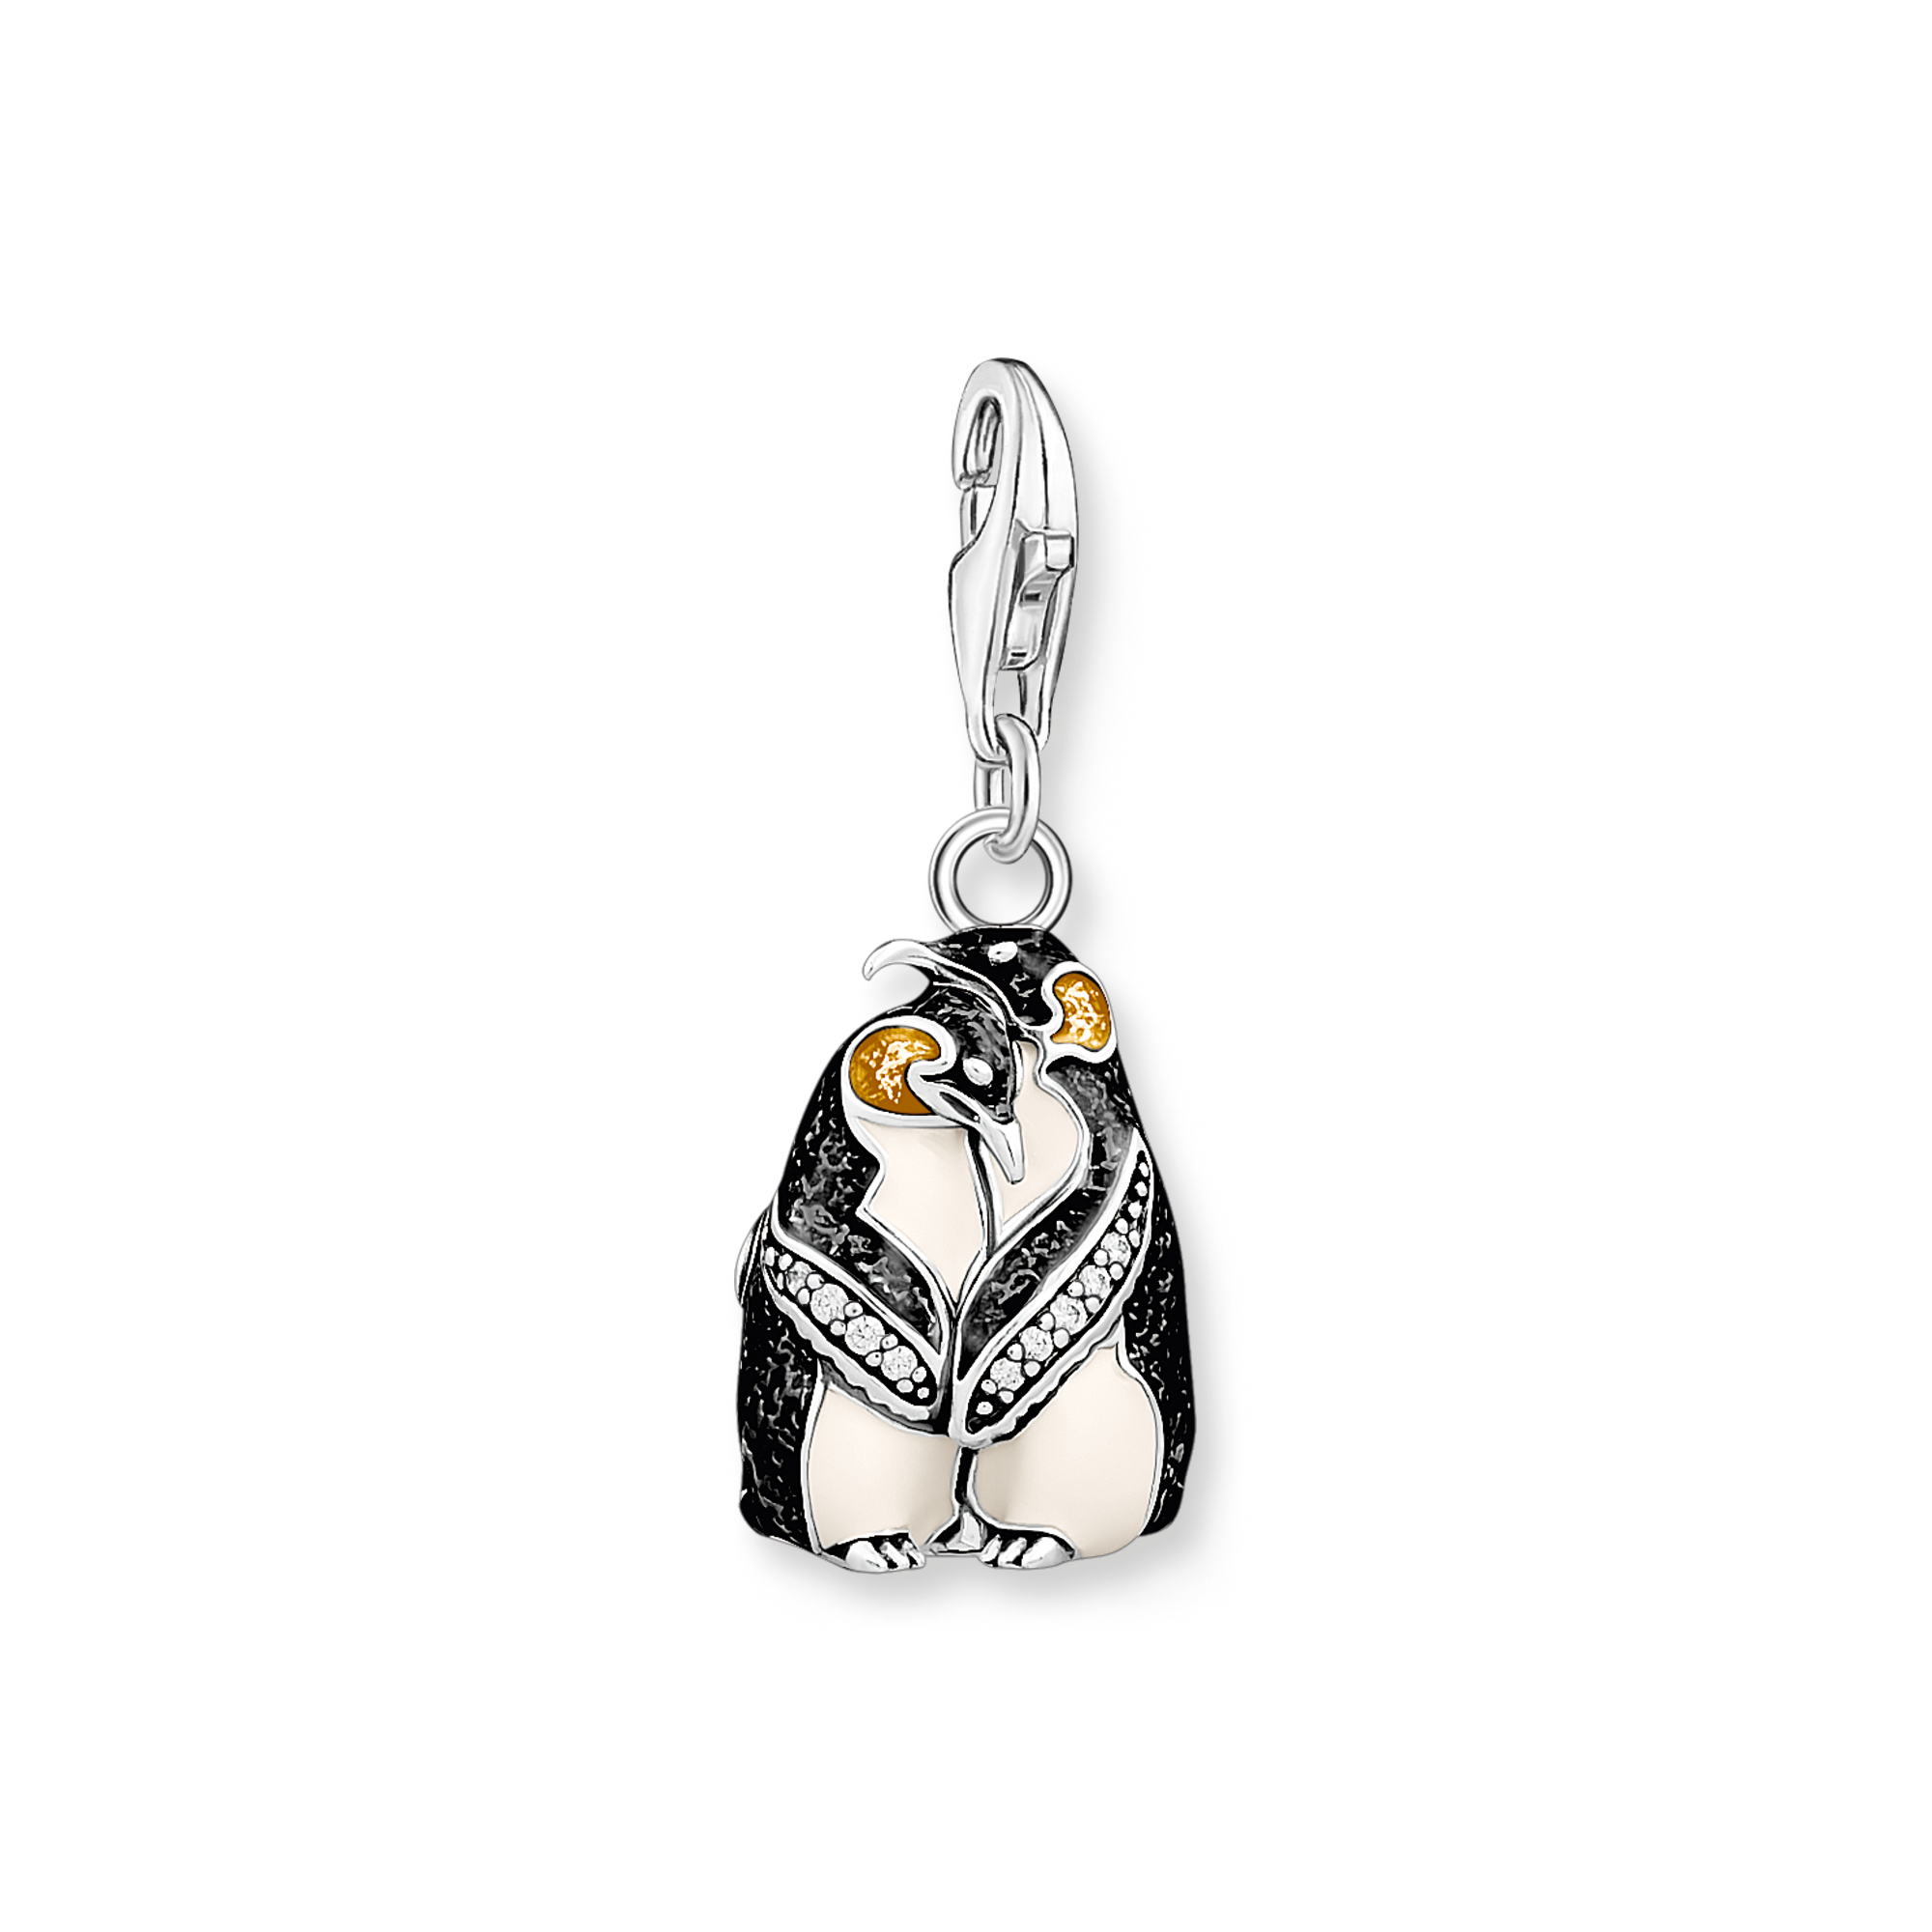 Thomas Sabo Charm Pinguine 1909 günstig kaufen bei Juwelierwelt.de ©★Gratisversand★Paypal ★trusted shops★10 Euro Gutschein★